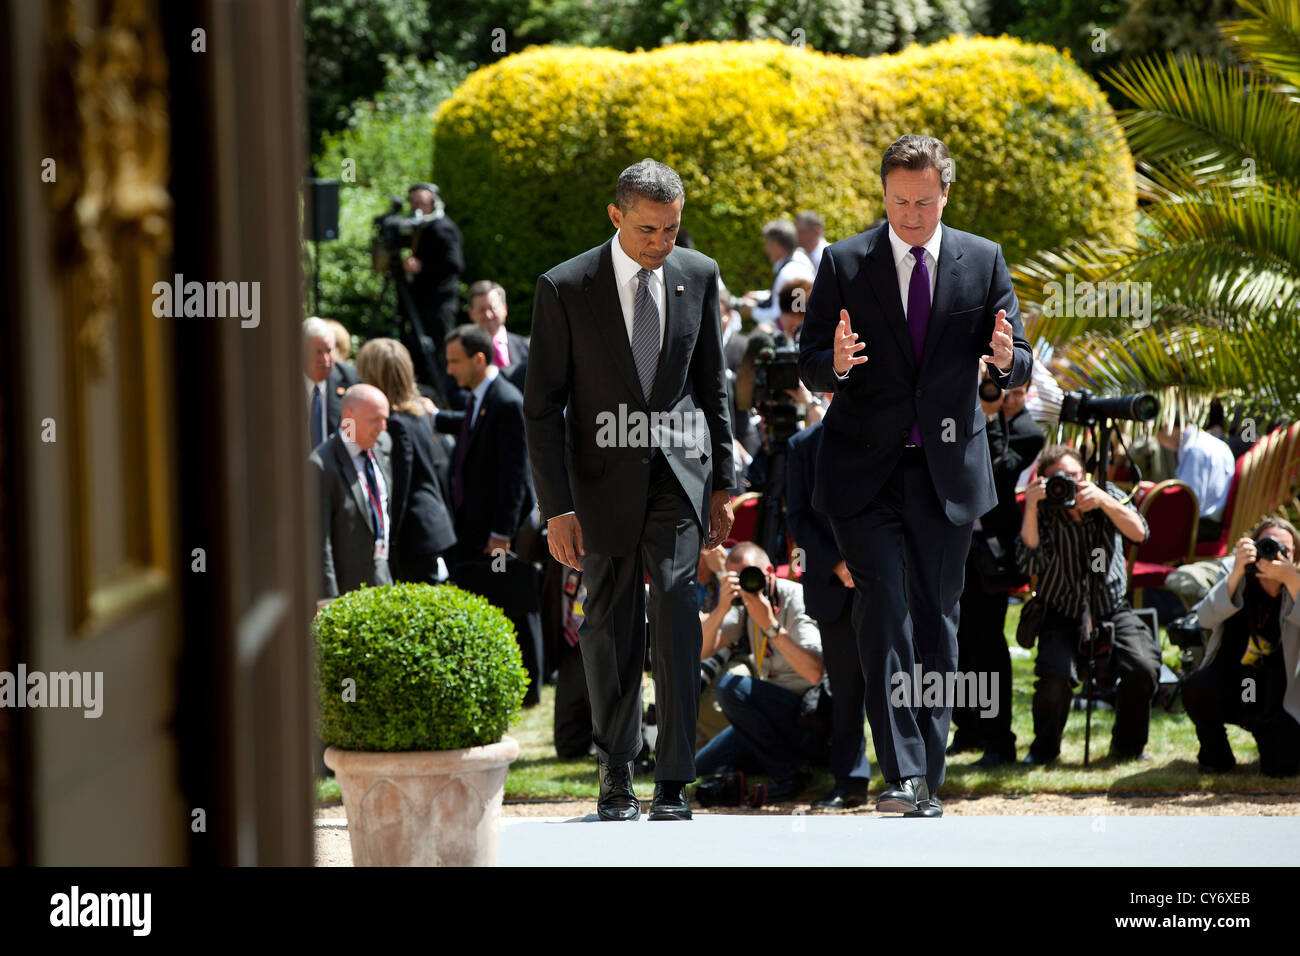 El presidente estadounidense, Barack Obama, y el Primer Ministro Británico David Cameron caminar juntos tras su conferencia de prensa conjunta en Lancaster House, 25 de mayo de 2011 en Londres, Inglaterra. Foto de stock